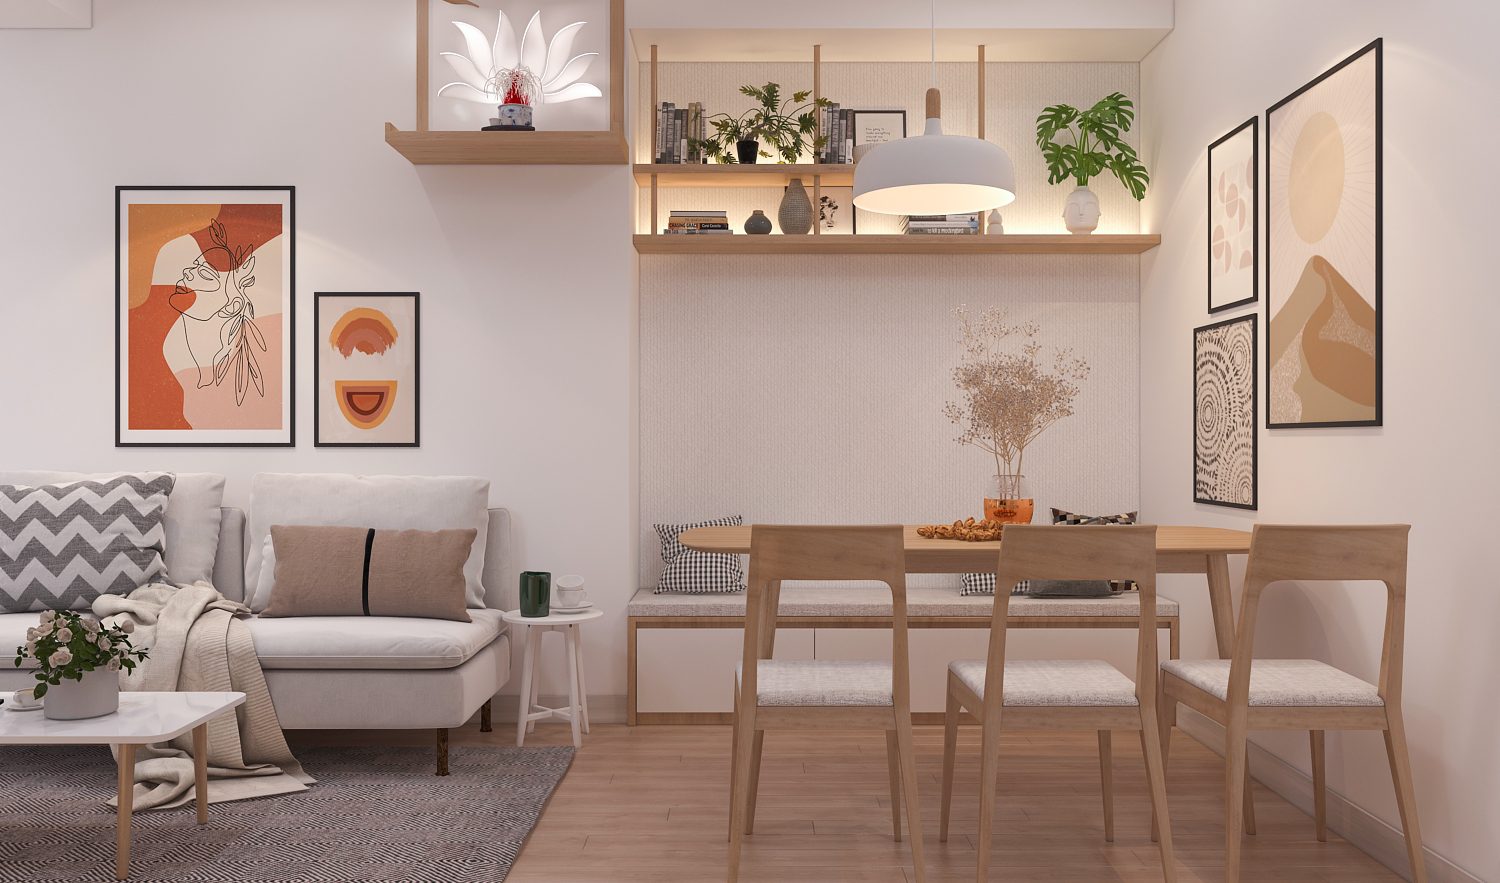 Khu vực sinh hoạt chung ấm cúng và tiện lợi trong thiết kế nội thất căn hộ hiện đại